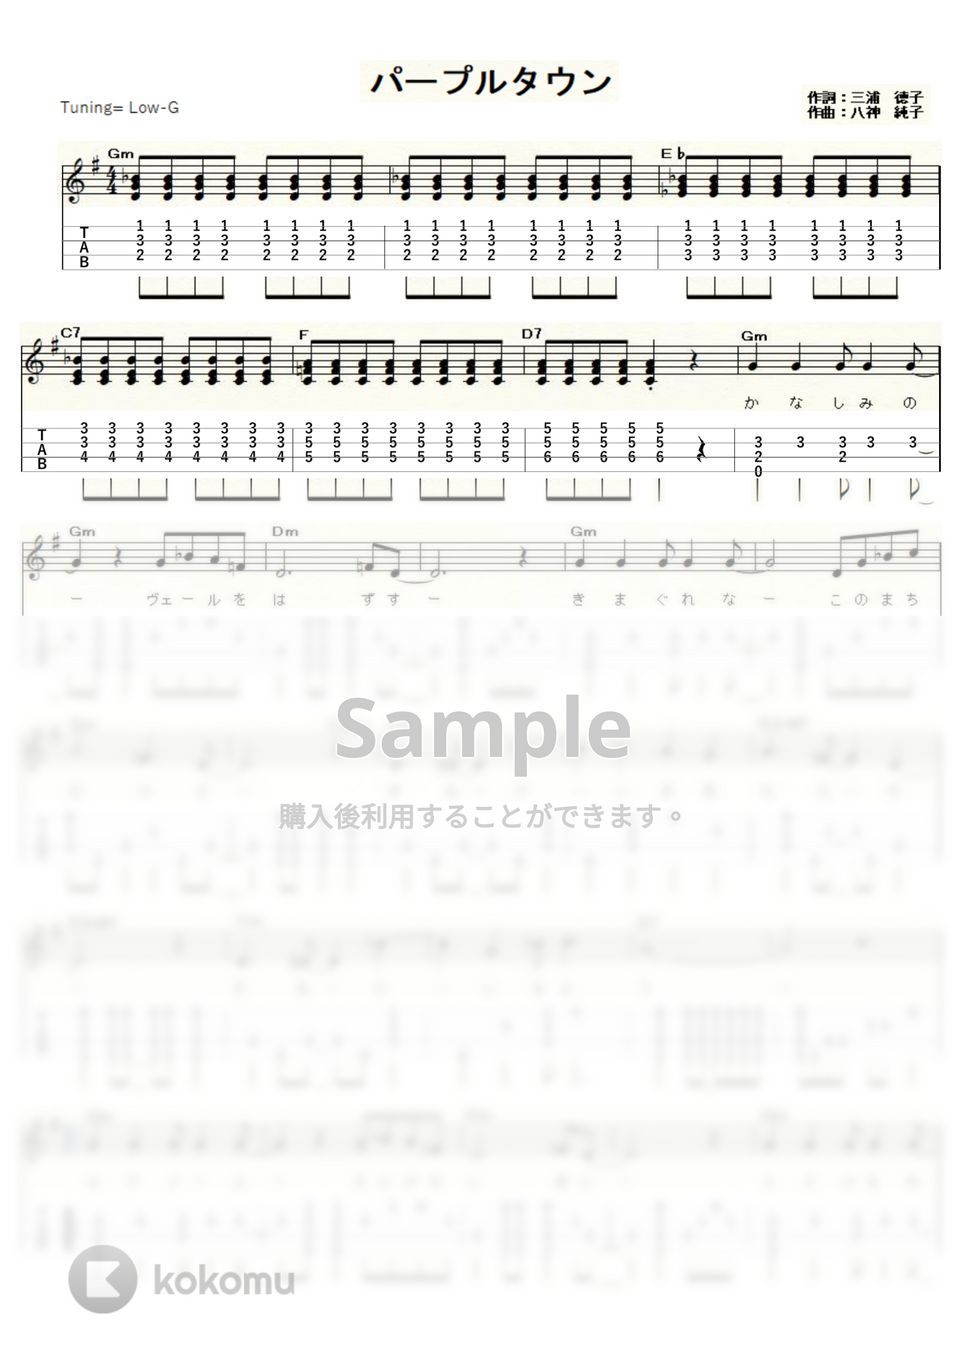 八神純子 - パープルタウン (ｳｸﾚﾚｿﾛ / Low-G / 中級) by ukulelepapa